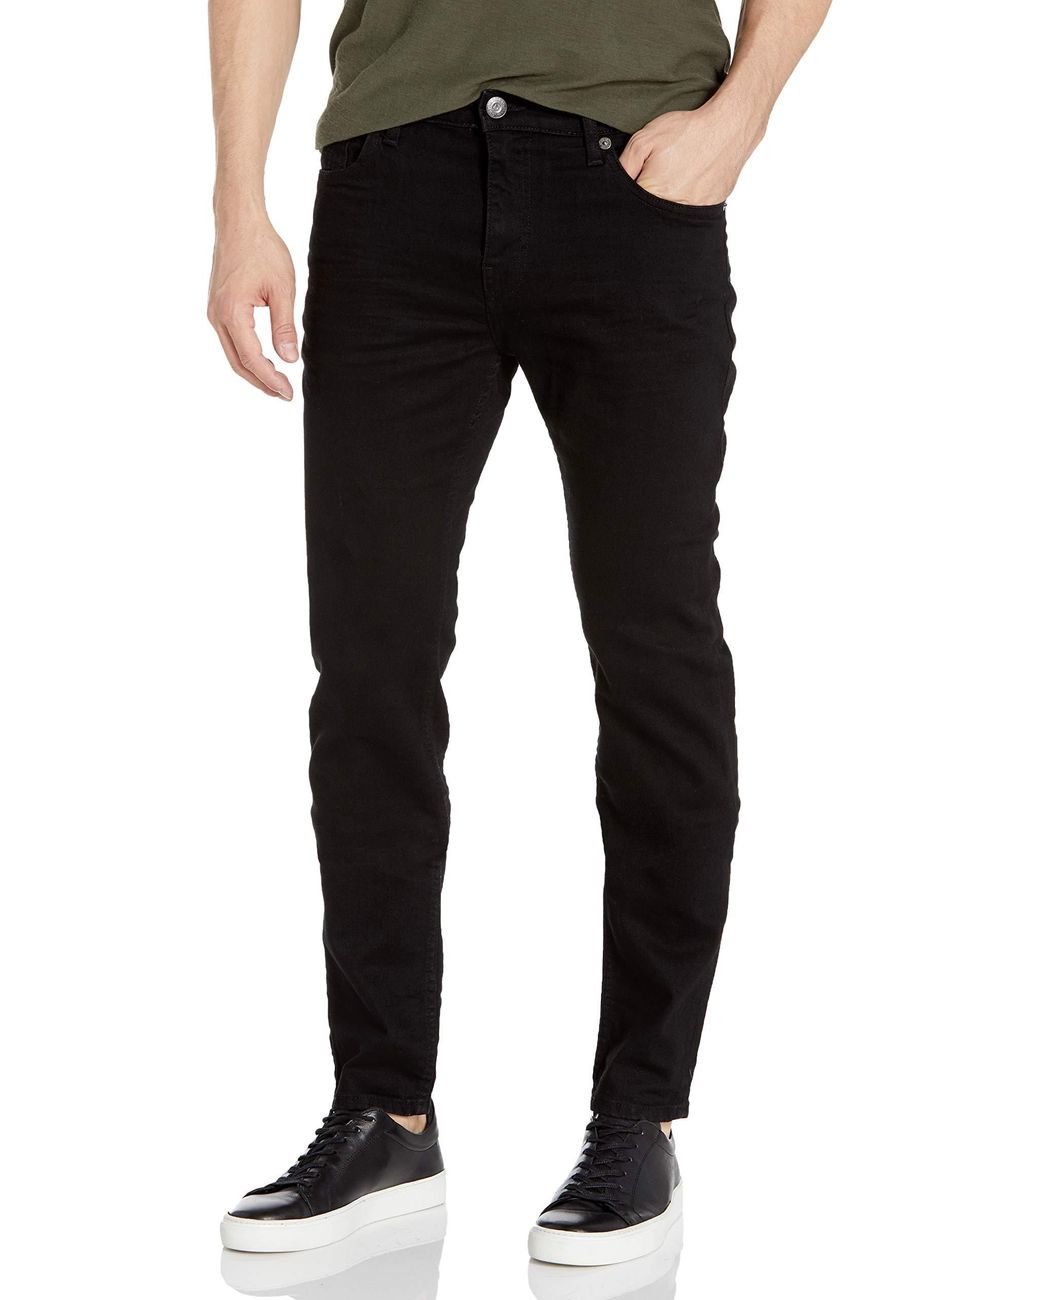 True Religion Denim Ricky Skinny Fit Jean in Black for Men - Save 2% - Lyst